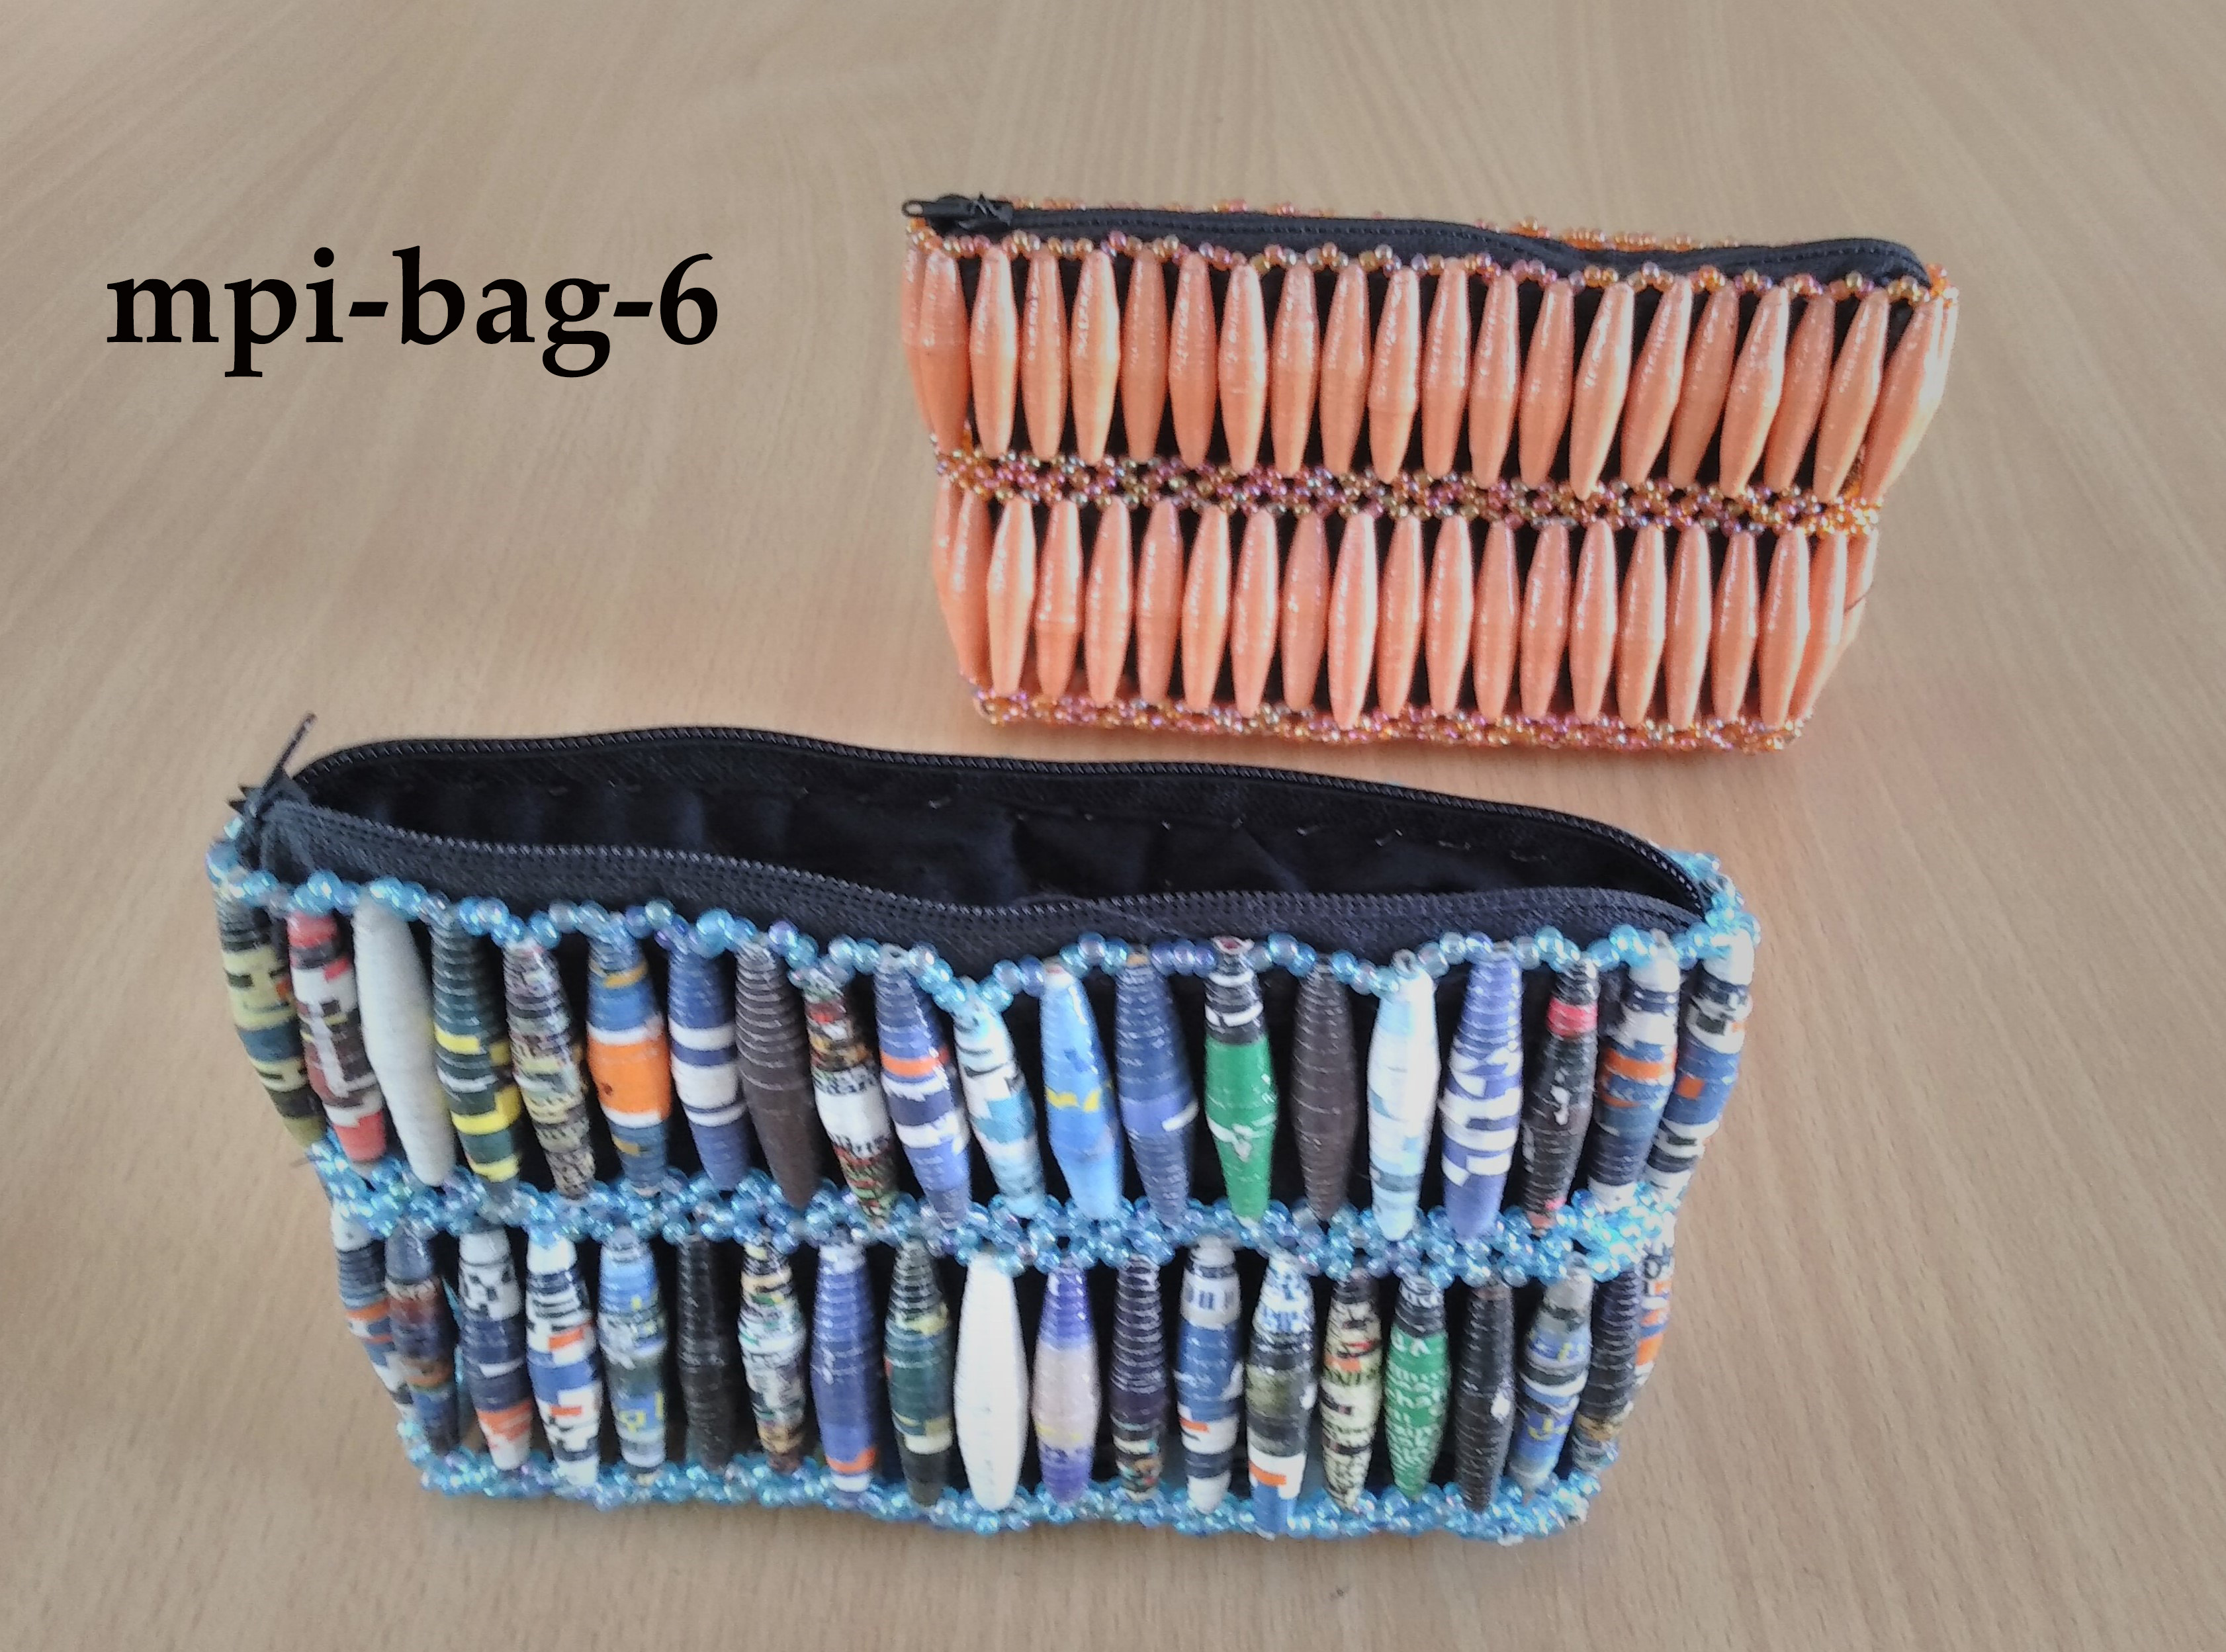 Beaded purse (Mpi-bag-6)